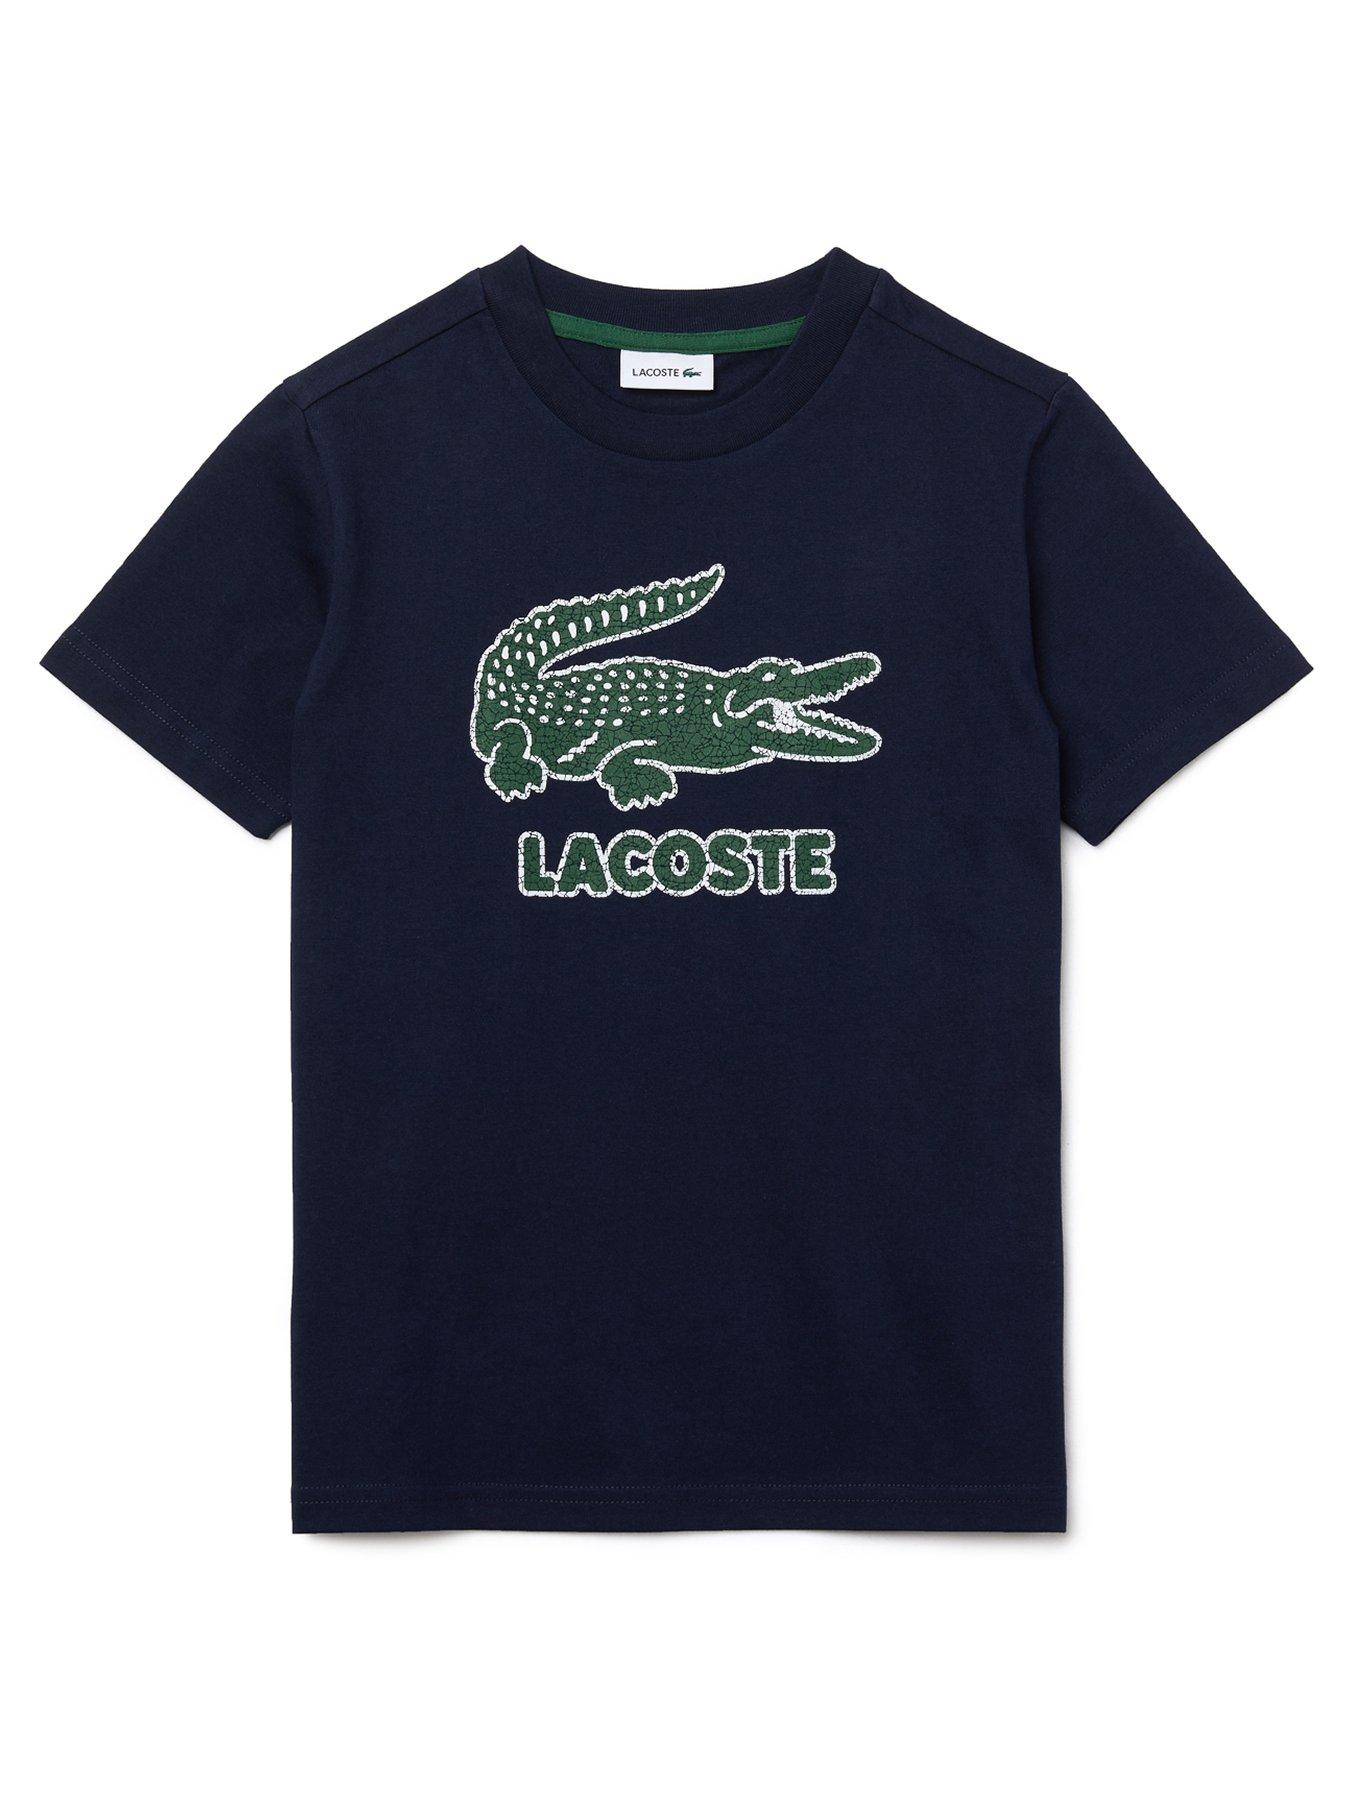 lacoste boyswear uk